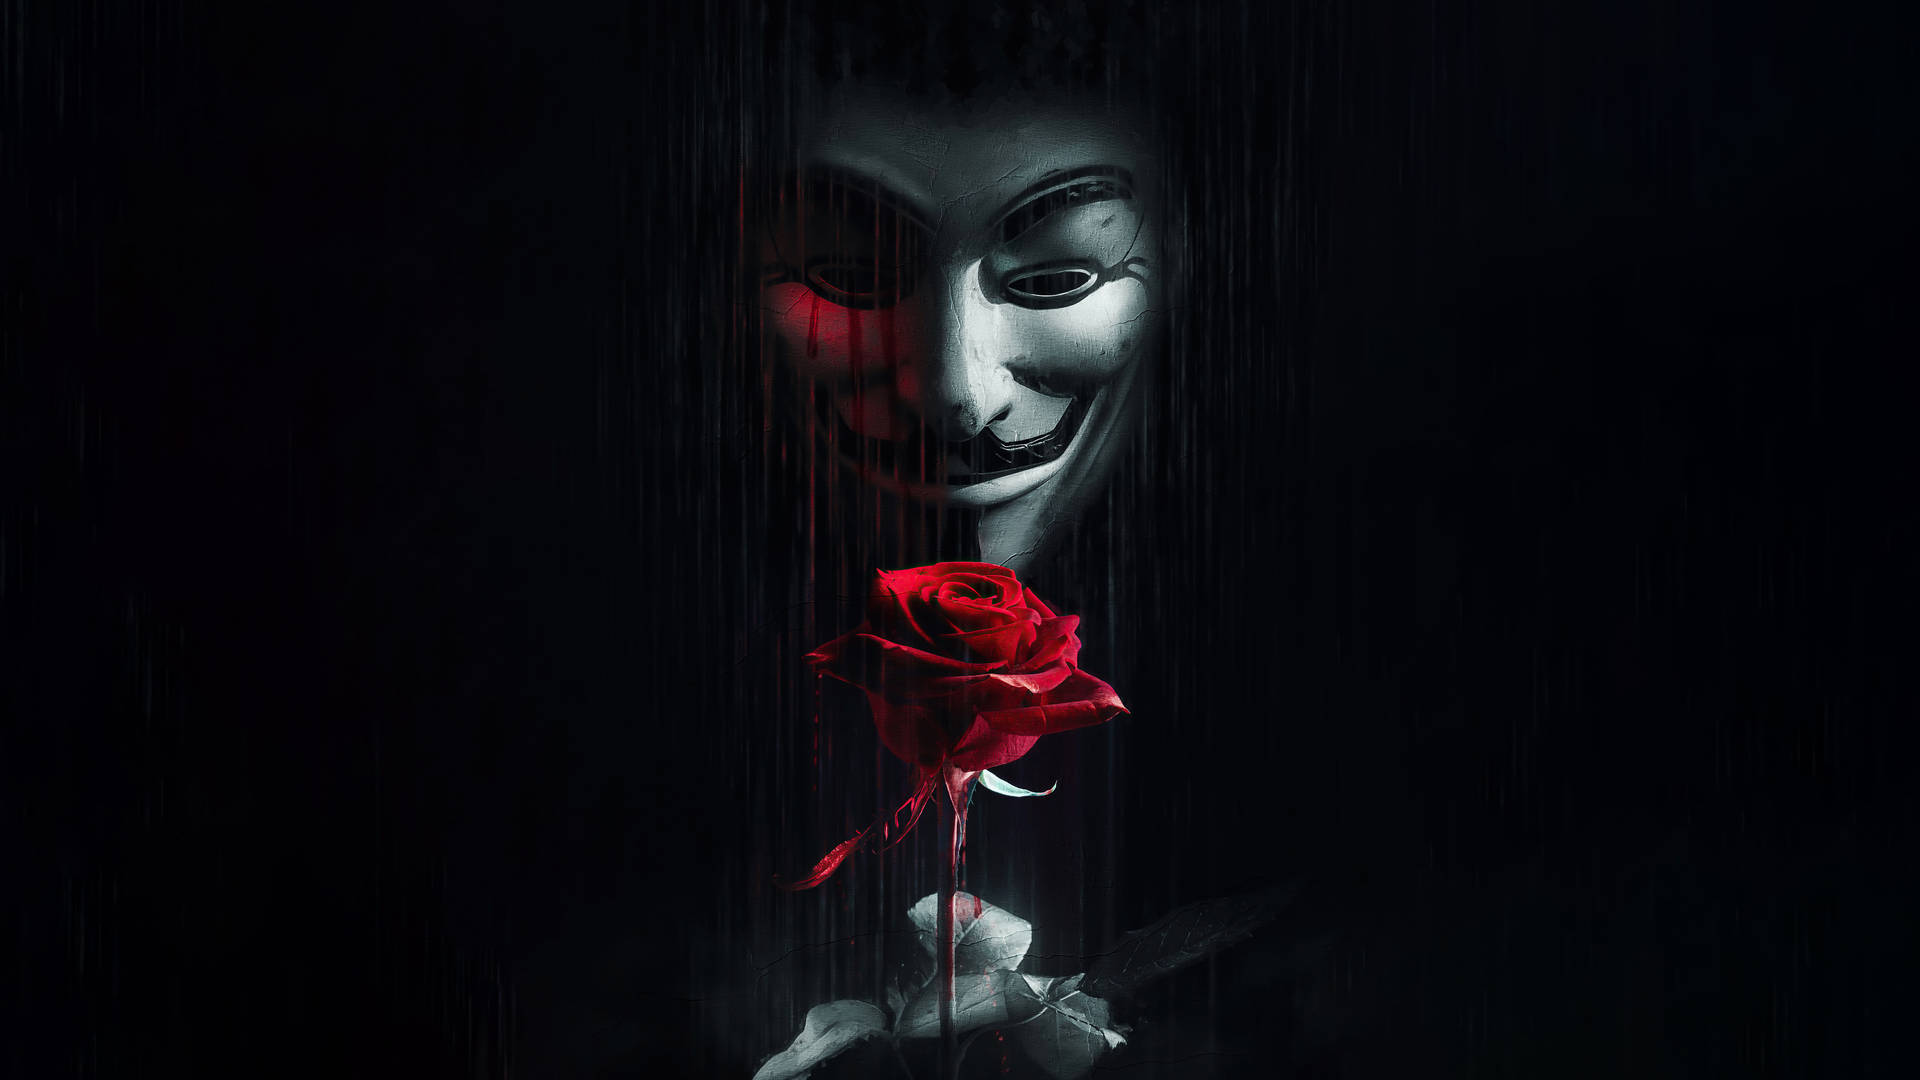 Với hình ảnh khẩu trang Anonymous nổi tiếng trên toàn thế giới, bạn sẽ cảm thấy như mình là một nhà hoạt động internet với quyền riêng tư như mong muốn. Tường nhà của bạn sẽ trở nên độc đáo và bí ẩn hơn bao giờ hết!